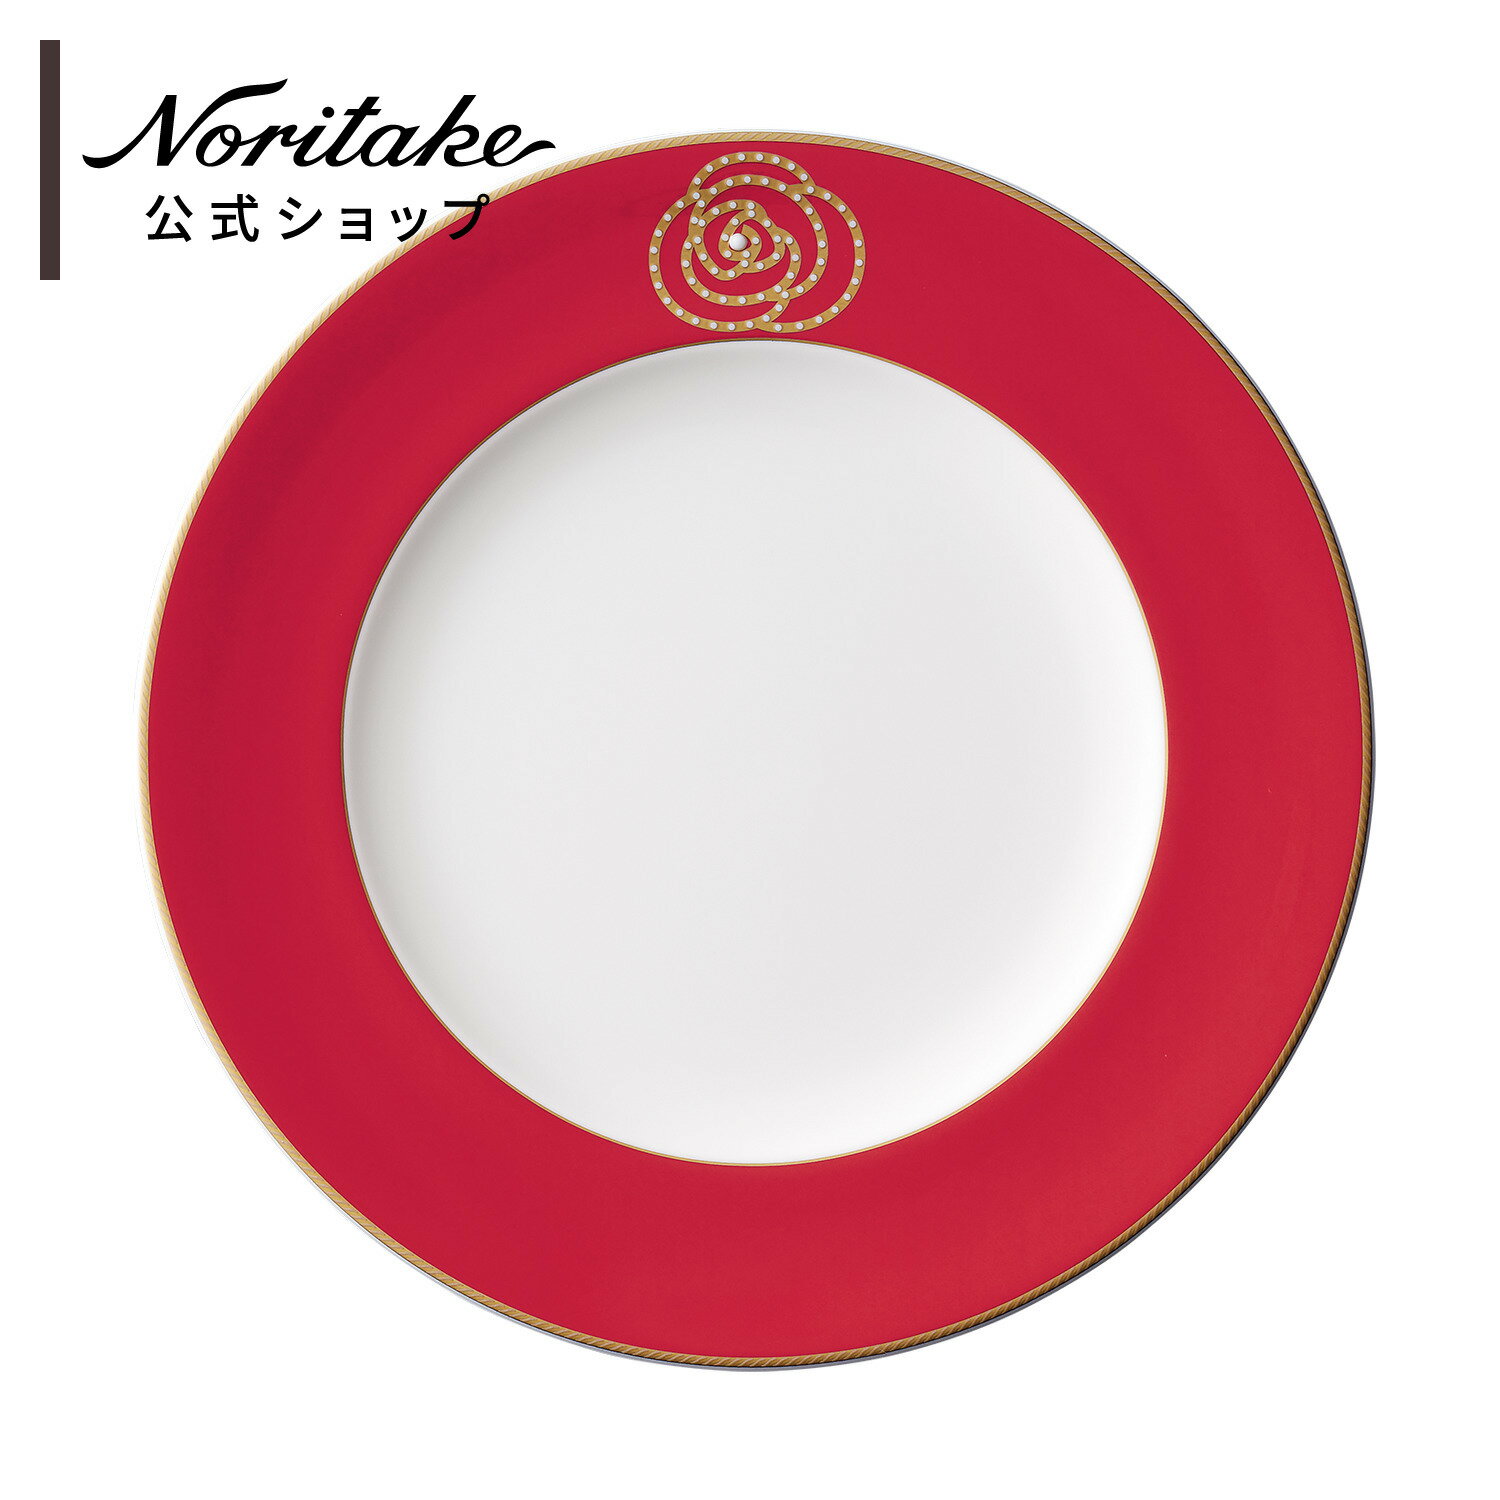 ノリタケ エイダンゴールド 24.5cmプレート(赤) ( ミート皿 ディナー皿 新生活 日常使い ゴールド 赤 おしゃれ